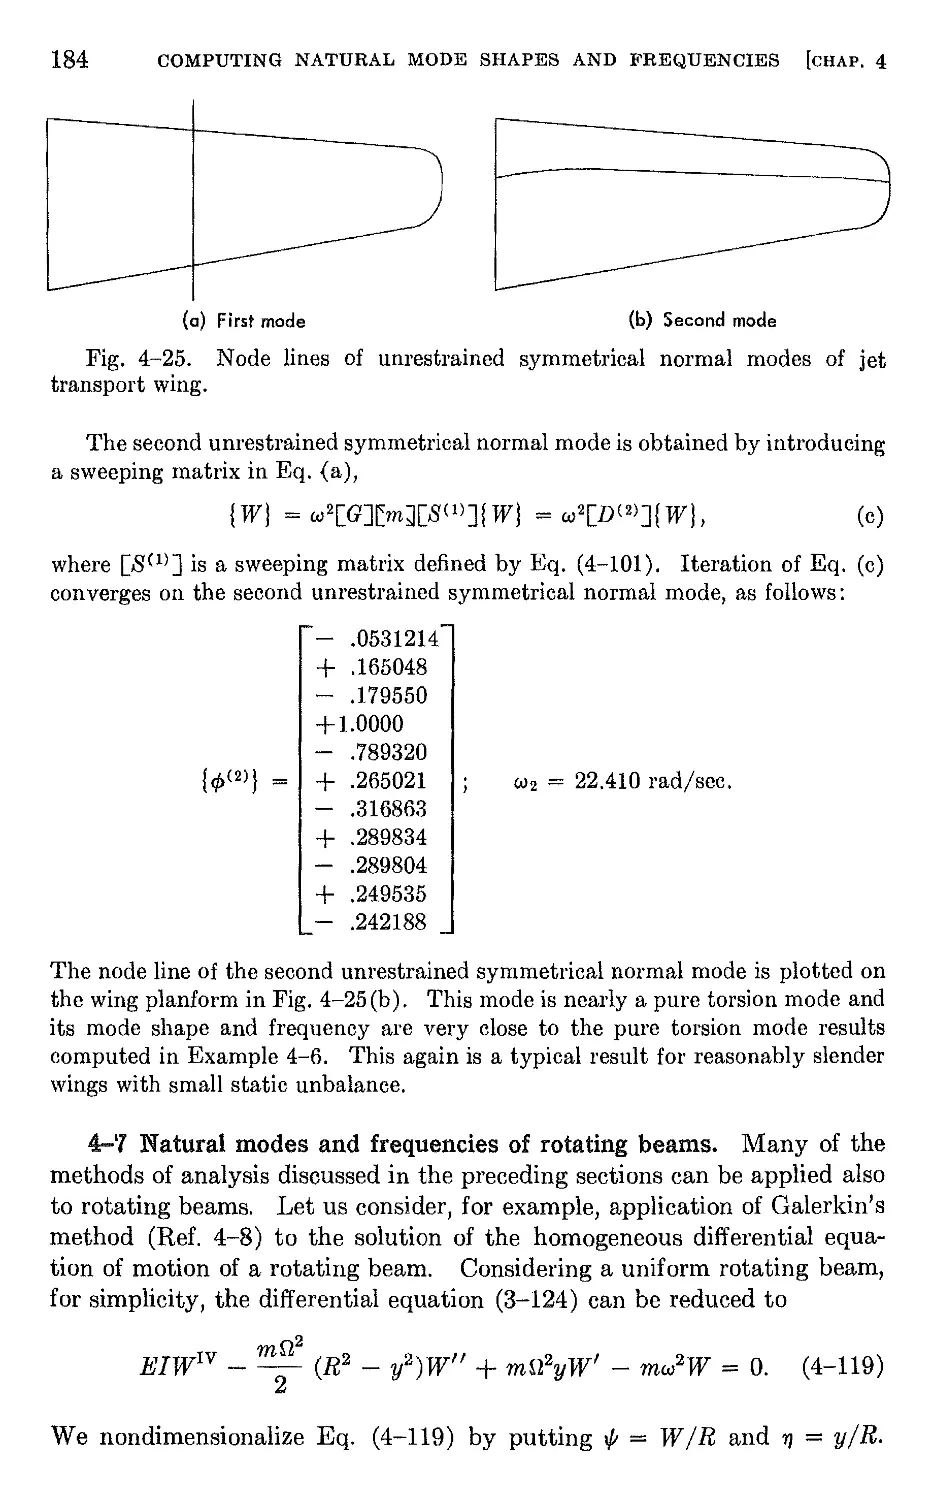 4.7 Natural modes and frequencies of rotating beams